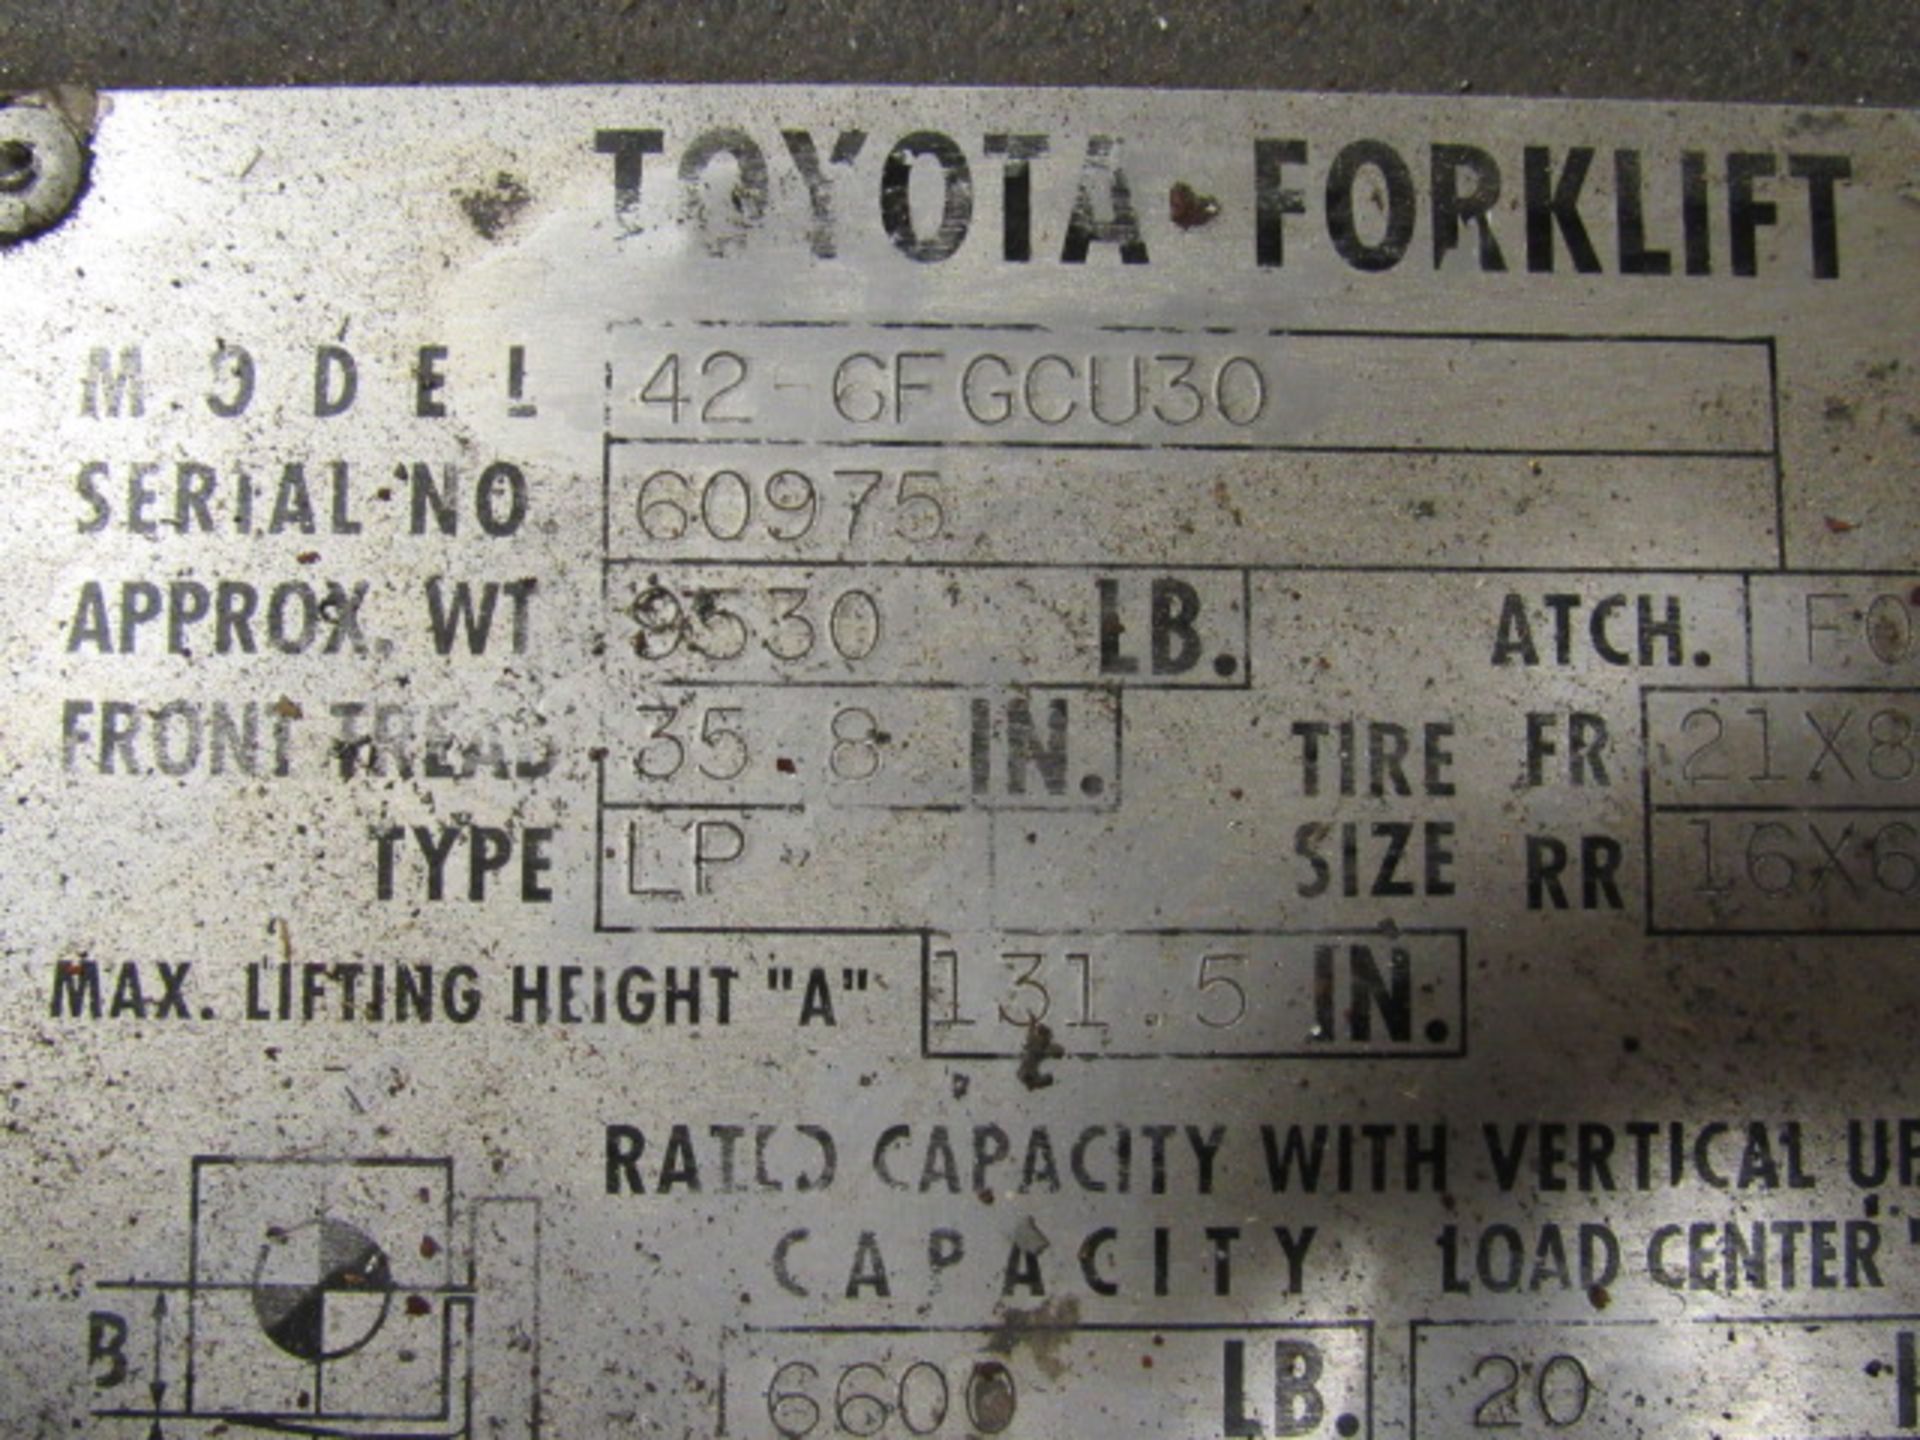 Toyota 426FGCU30 6,600 lb. Capacity LP Forklift - Image 7 of 7